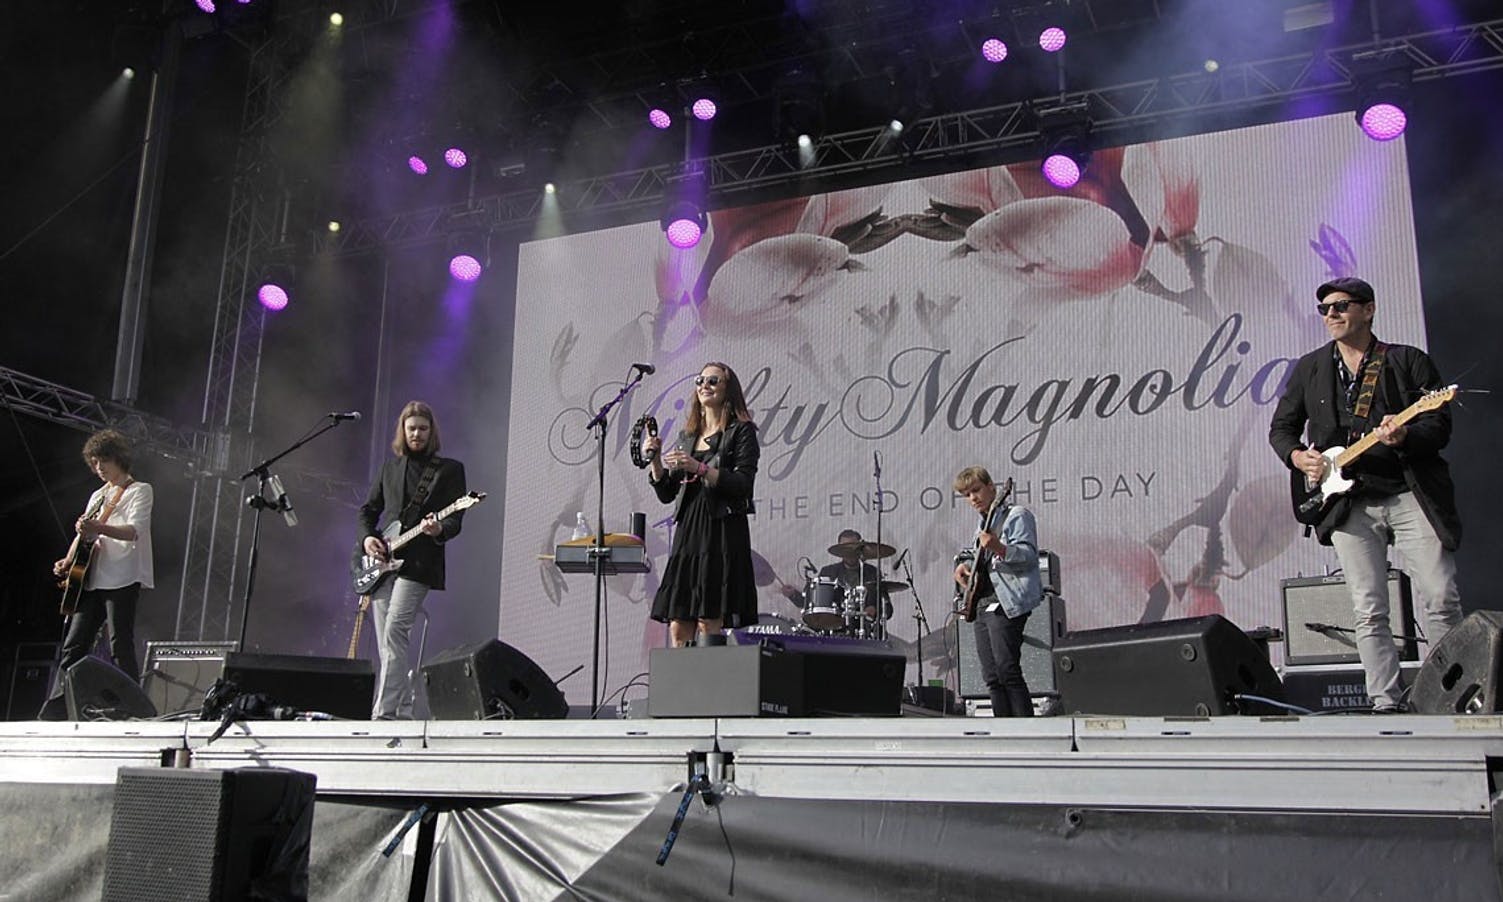 Mighty Magnolias, her på scenen under Osfest 2017, speler på Elvehuset i kveld. (Foto: KVB)